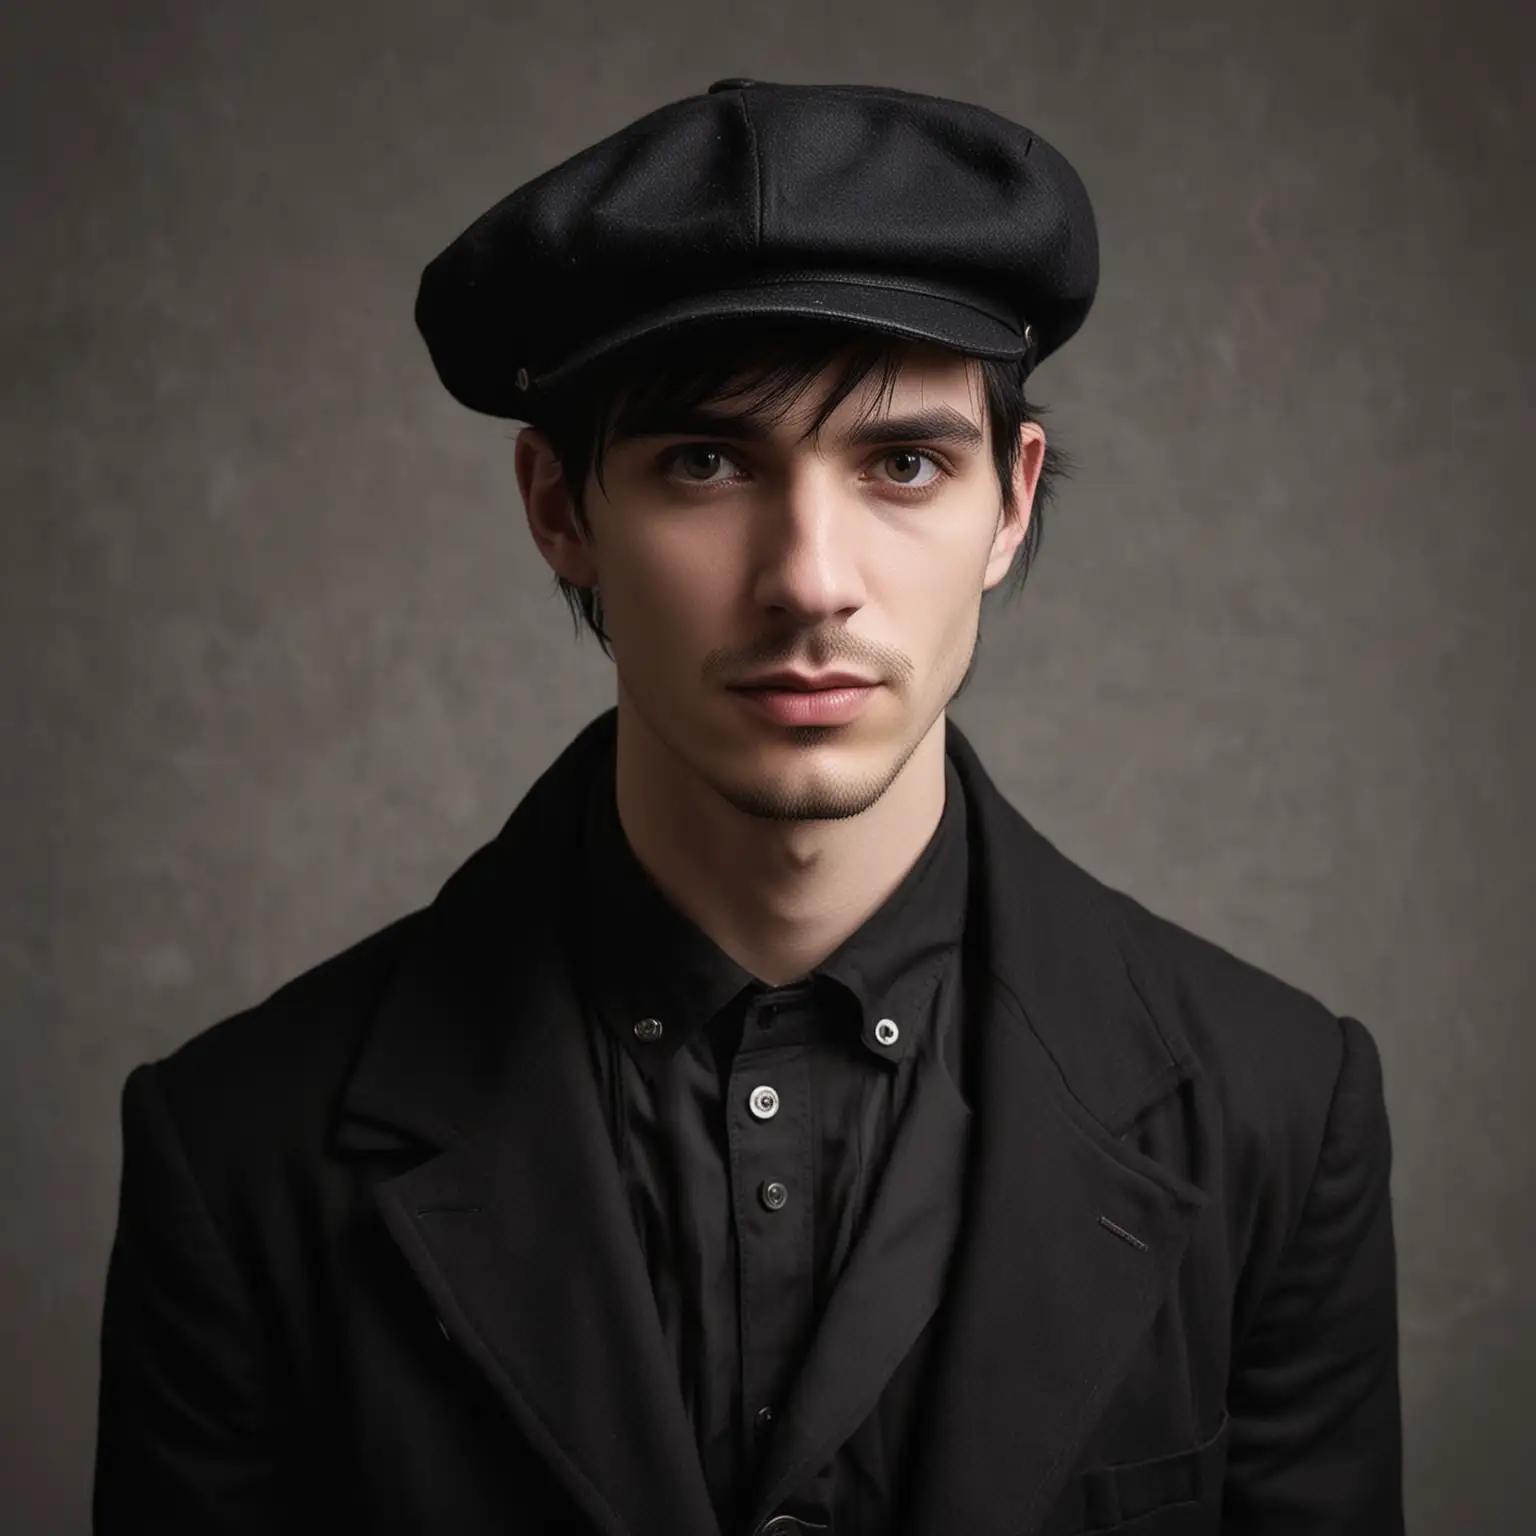 Goth Man Wearing Newsboy Hat in Urban Setting